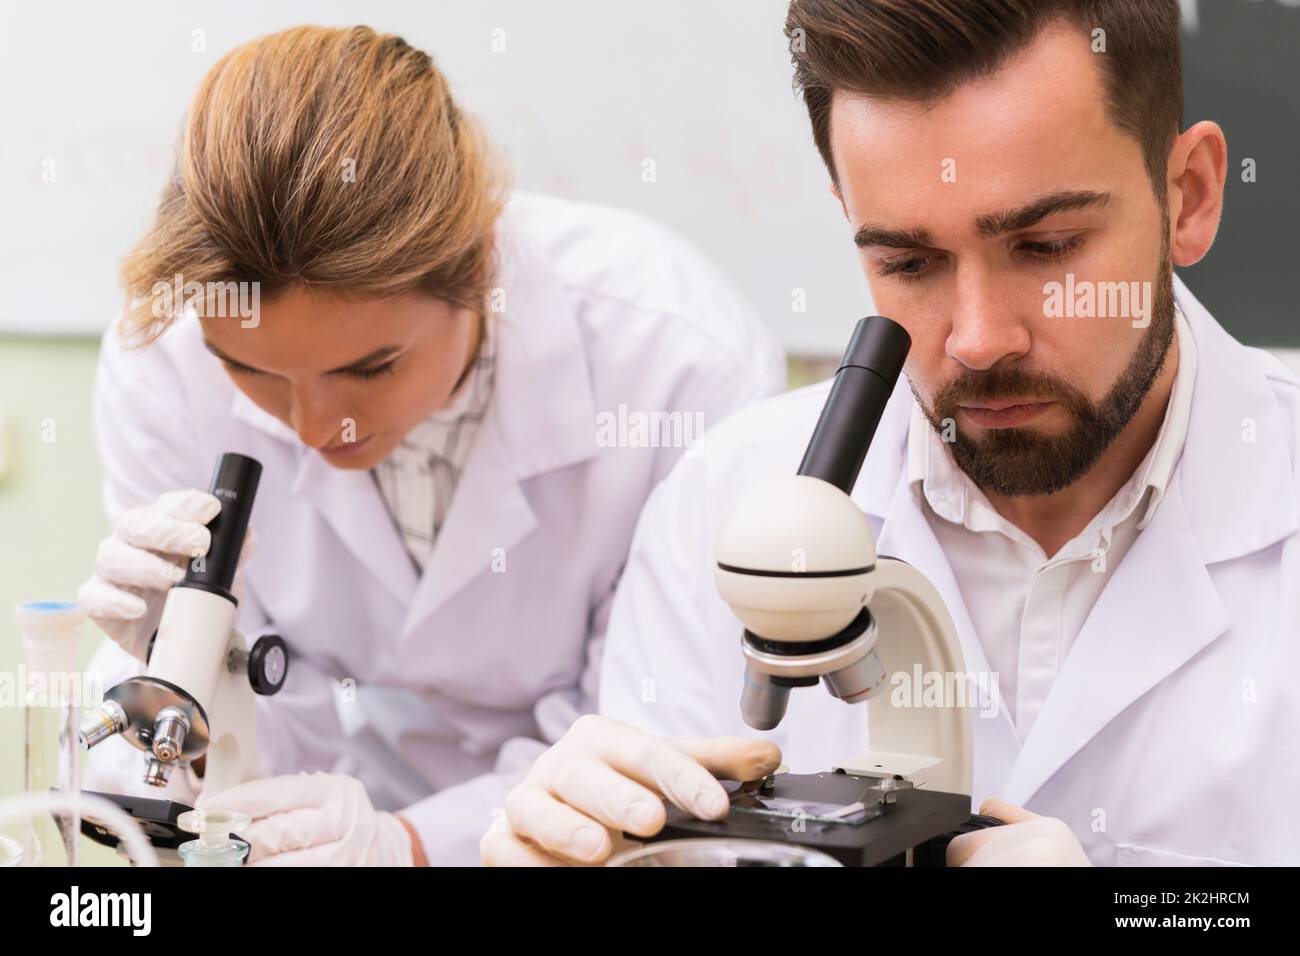 Dos colegas científicos están usando microscopios durante la investigación en un laboratorio Foto de stock